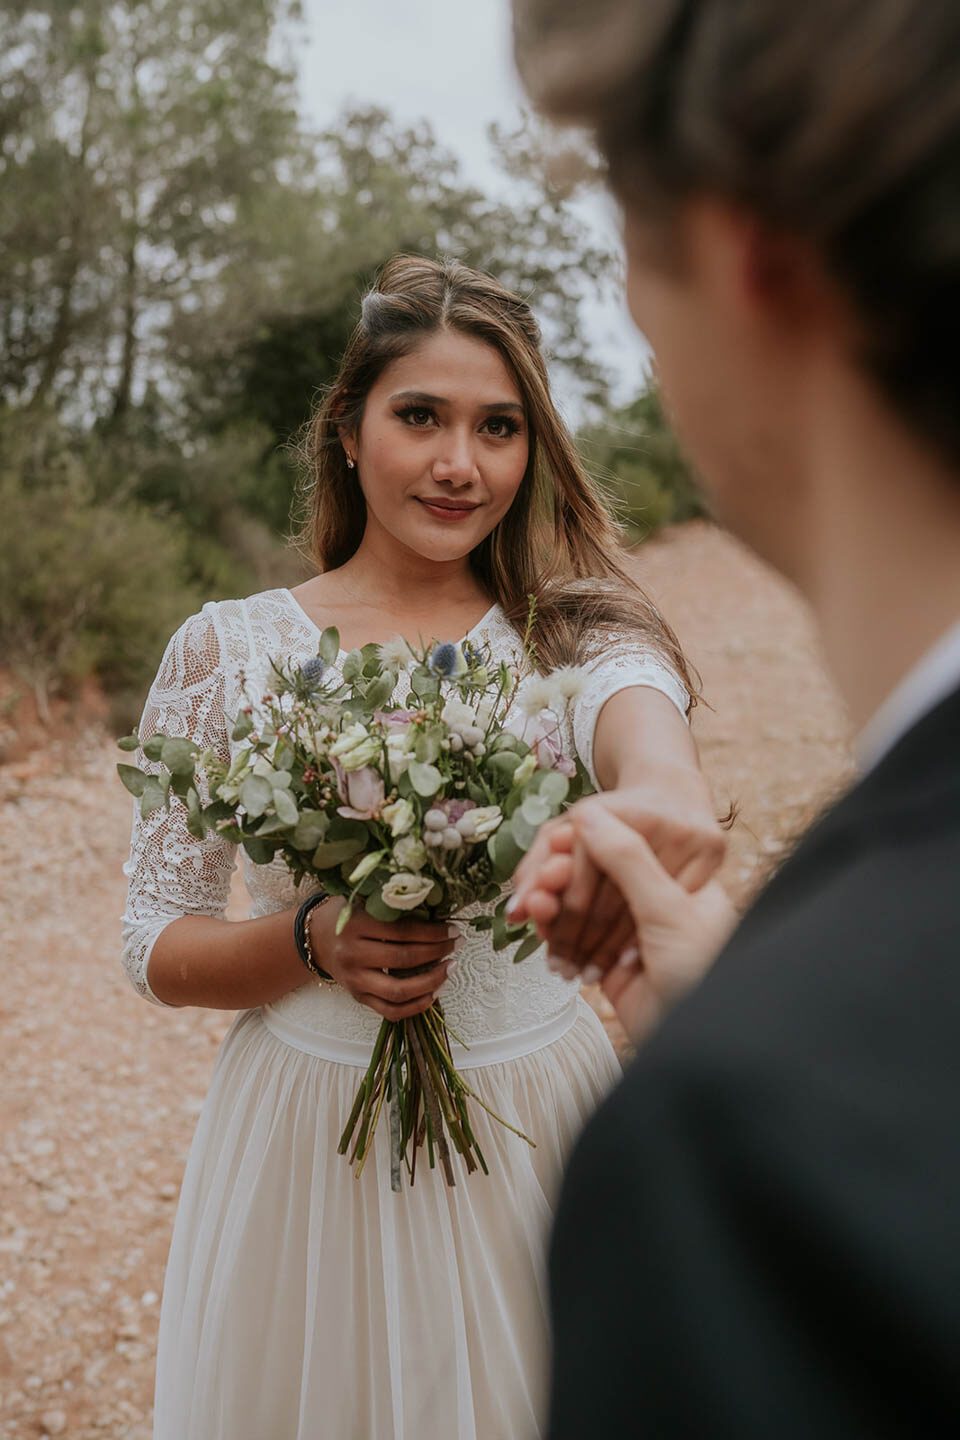 Braut mit Brautstrauss streckt Hand zum Brautigam aus